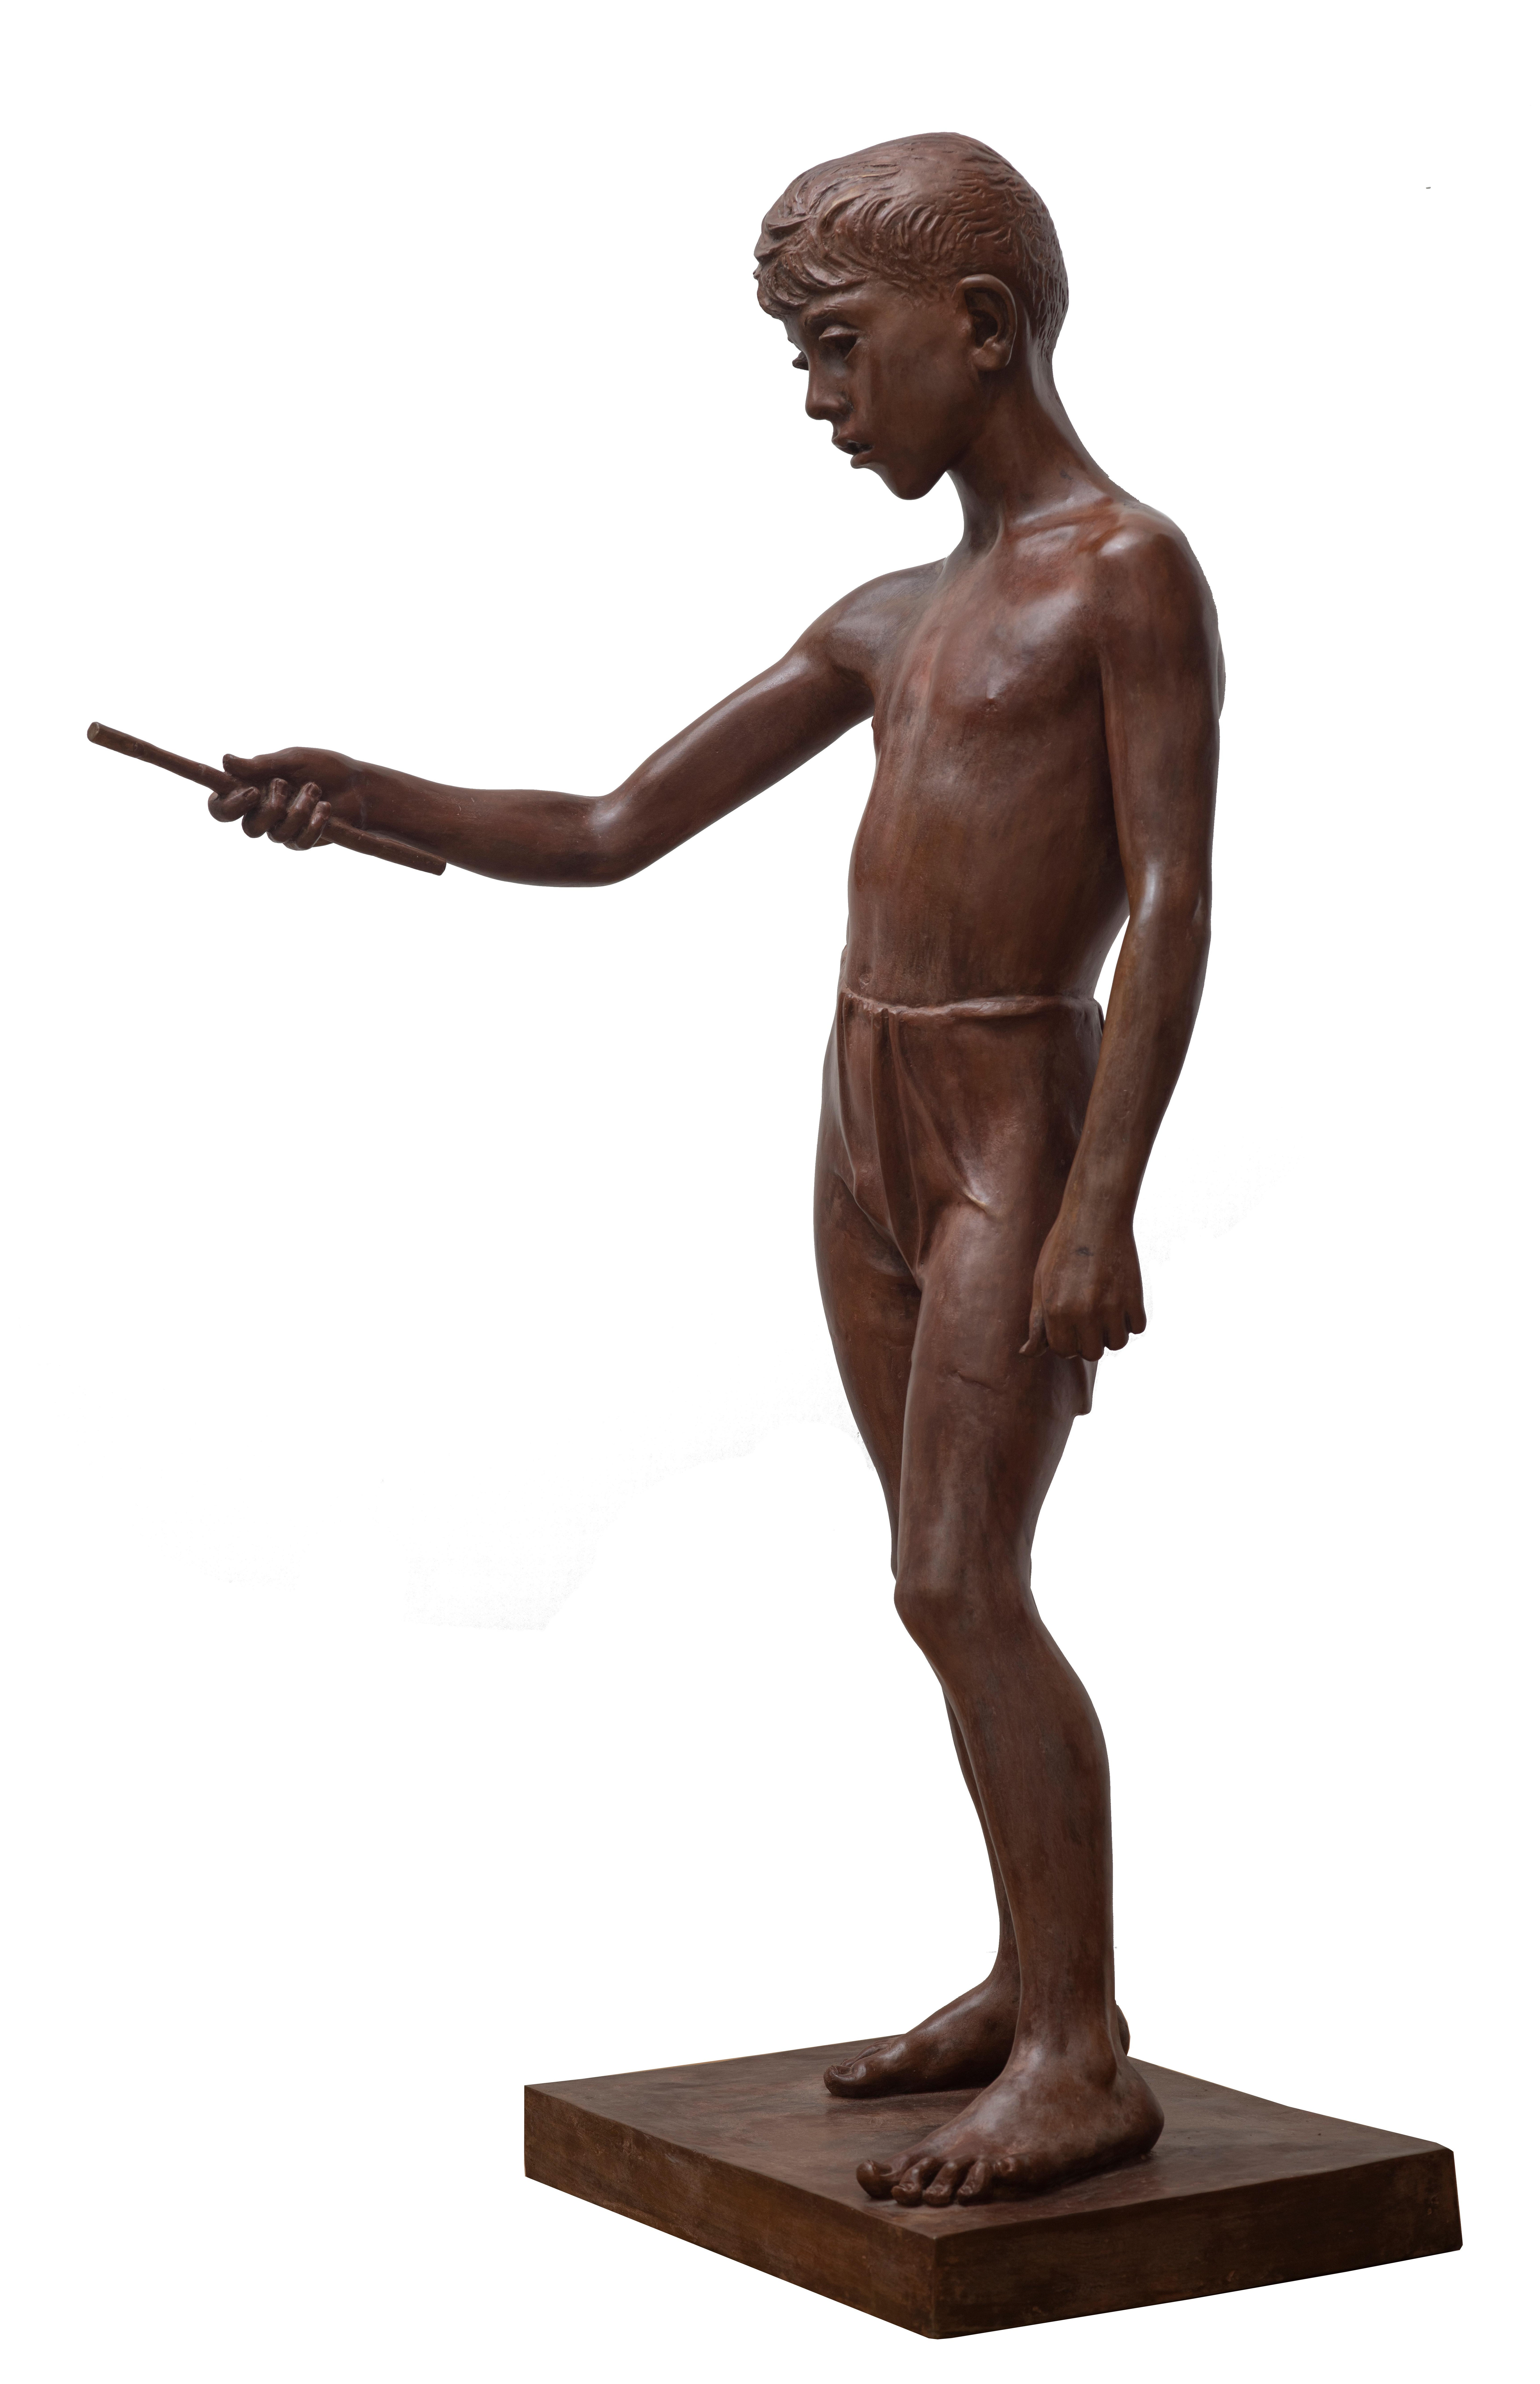 Fischer – Sculpture von Francesco Messina